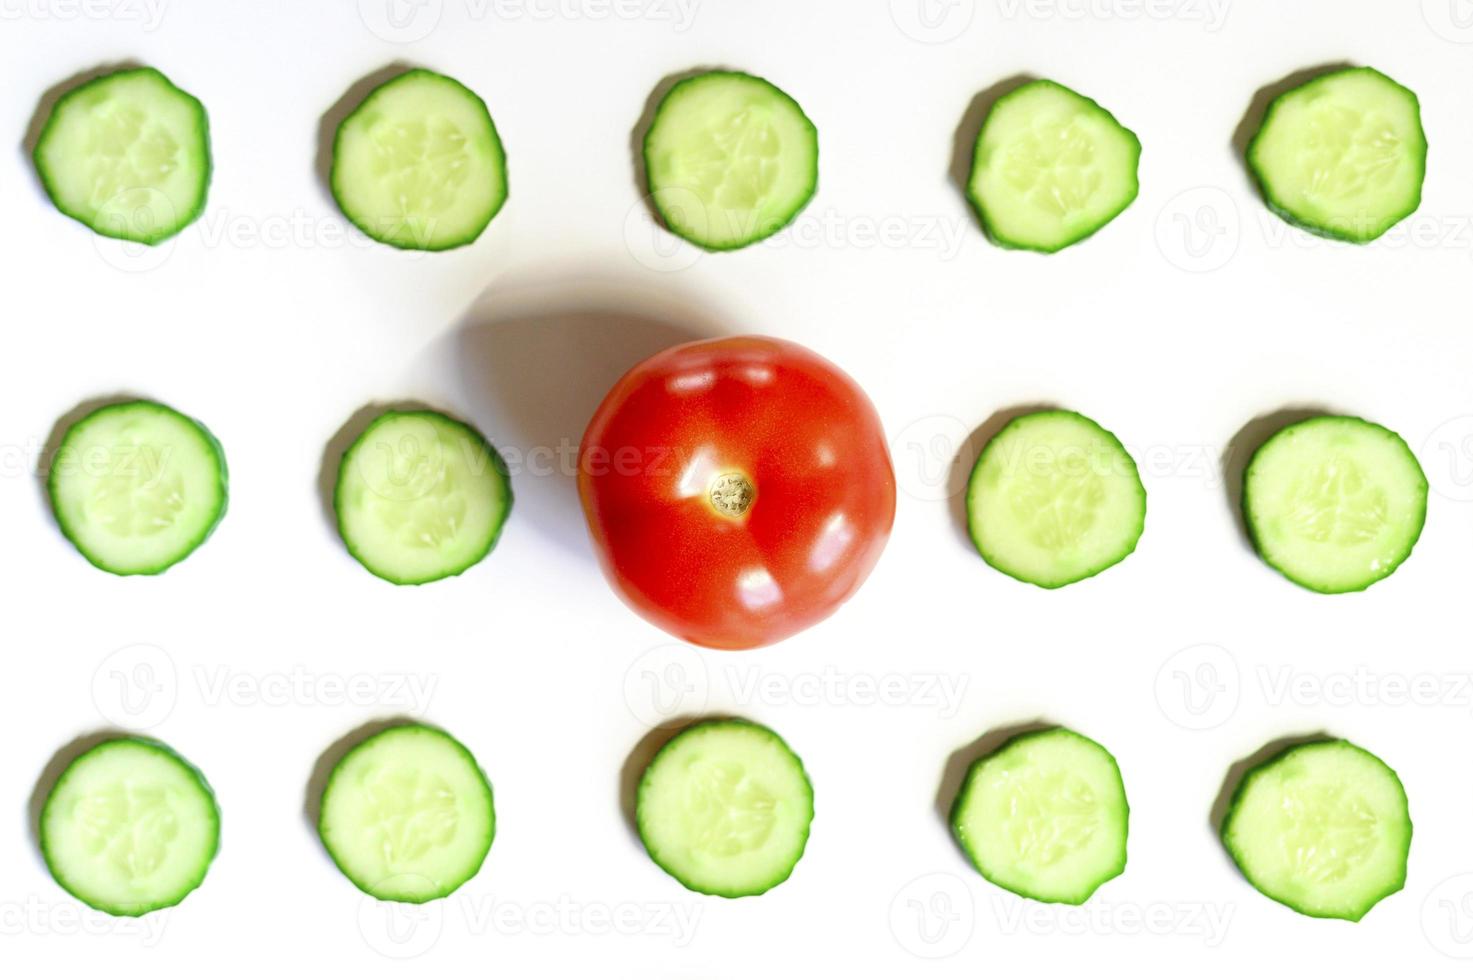 upprepande mönster av skivade halvcirklar av färska råa grönsaksgurkor för sallad och en hel tomat foto